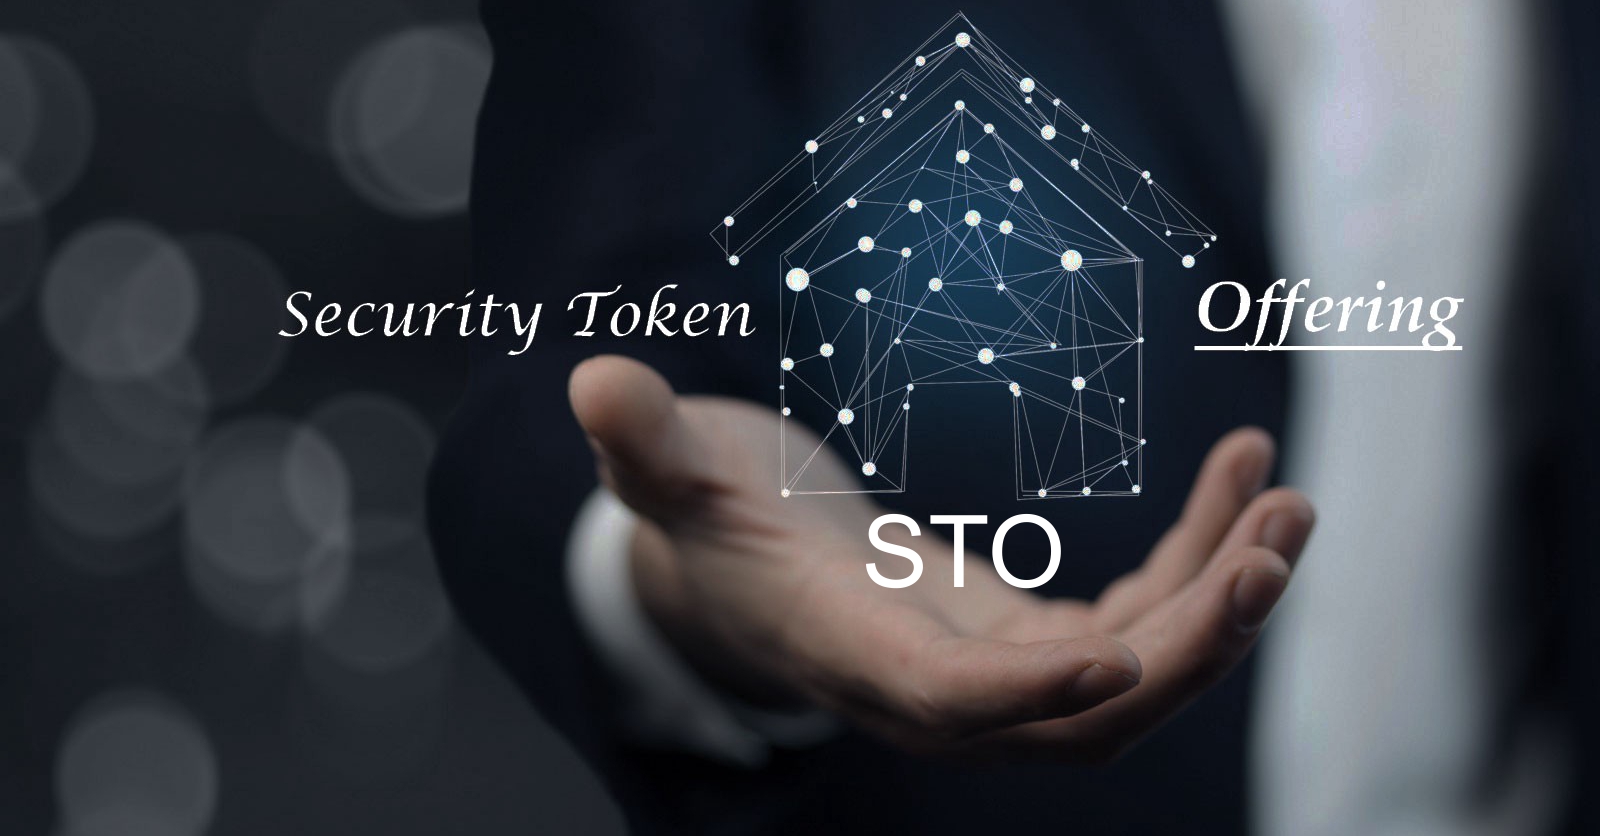 STO security token